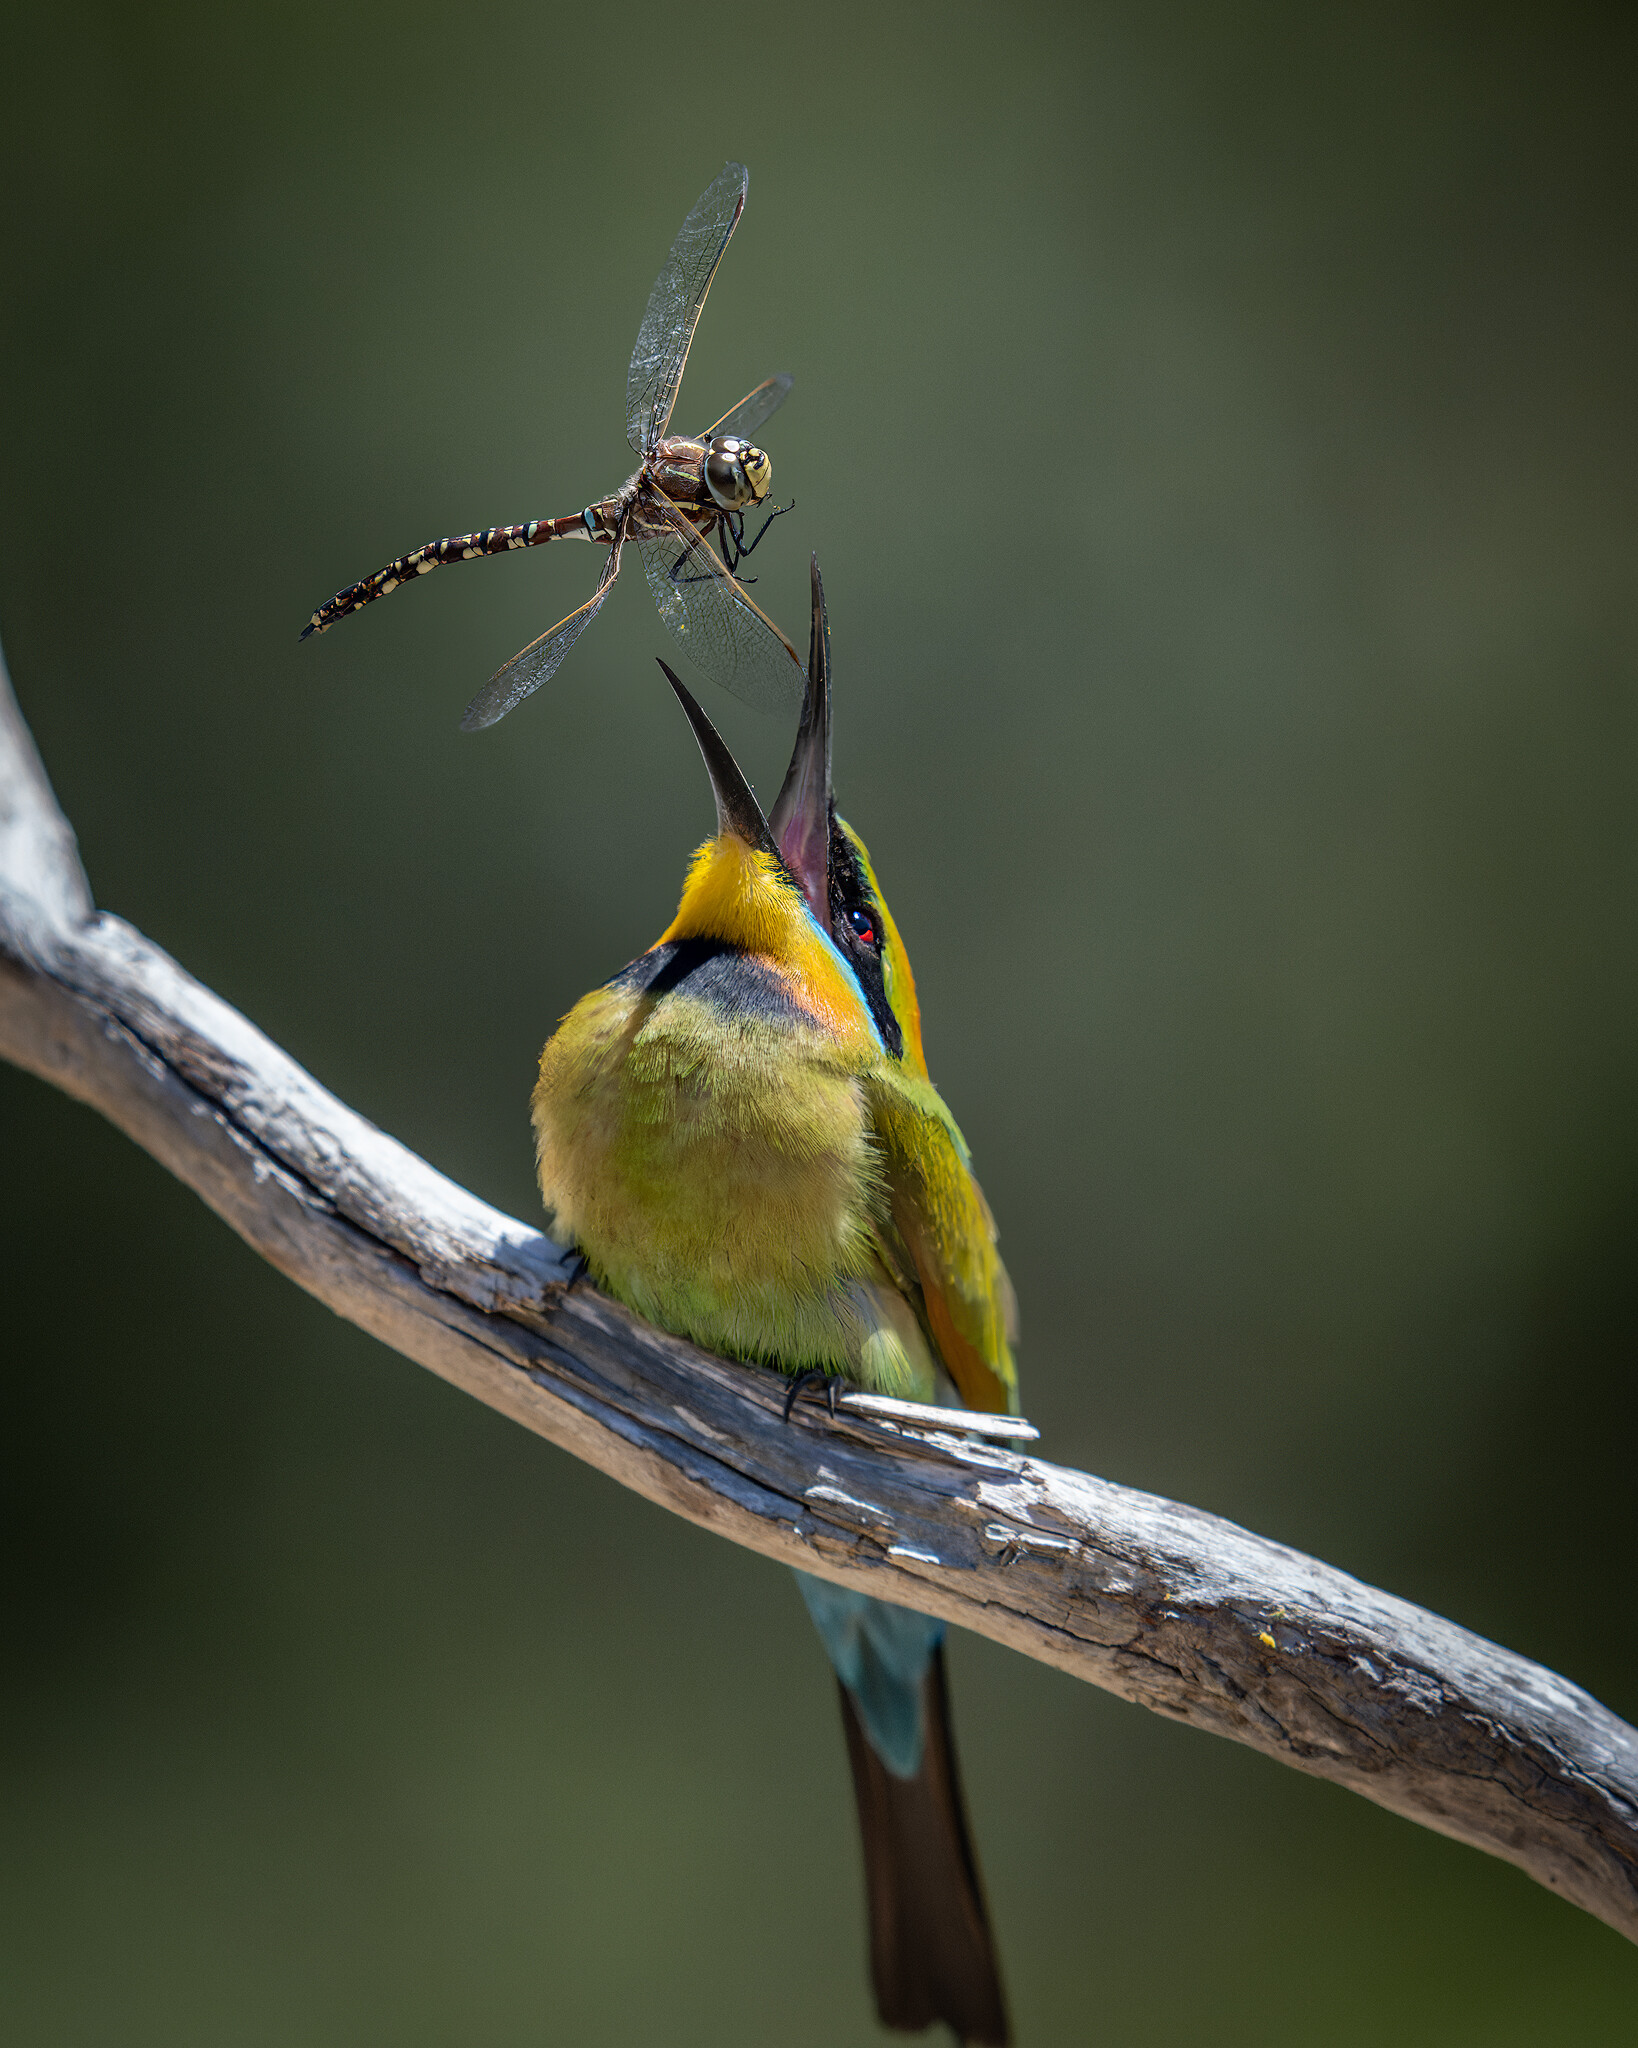 Финалист в категории Мир природы, 2021. Радужный пчелоед поймал стрекозу в Австралии. Автор Стив Николлс